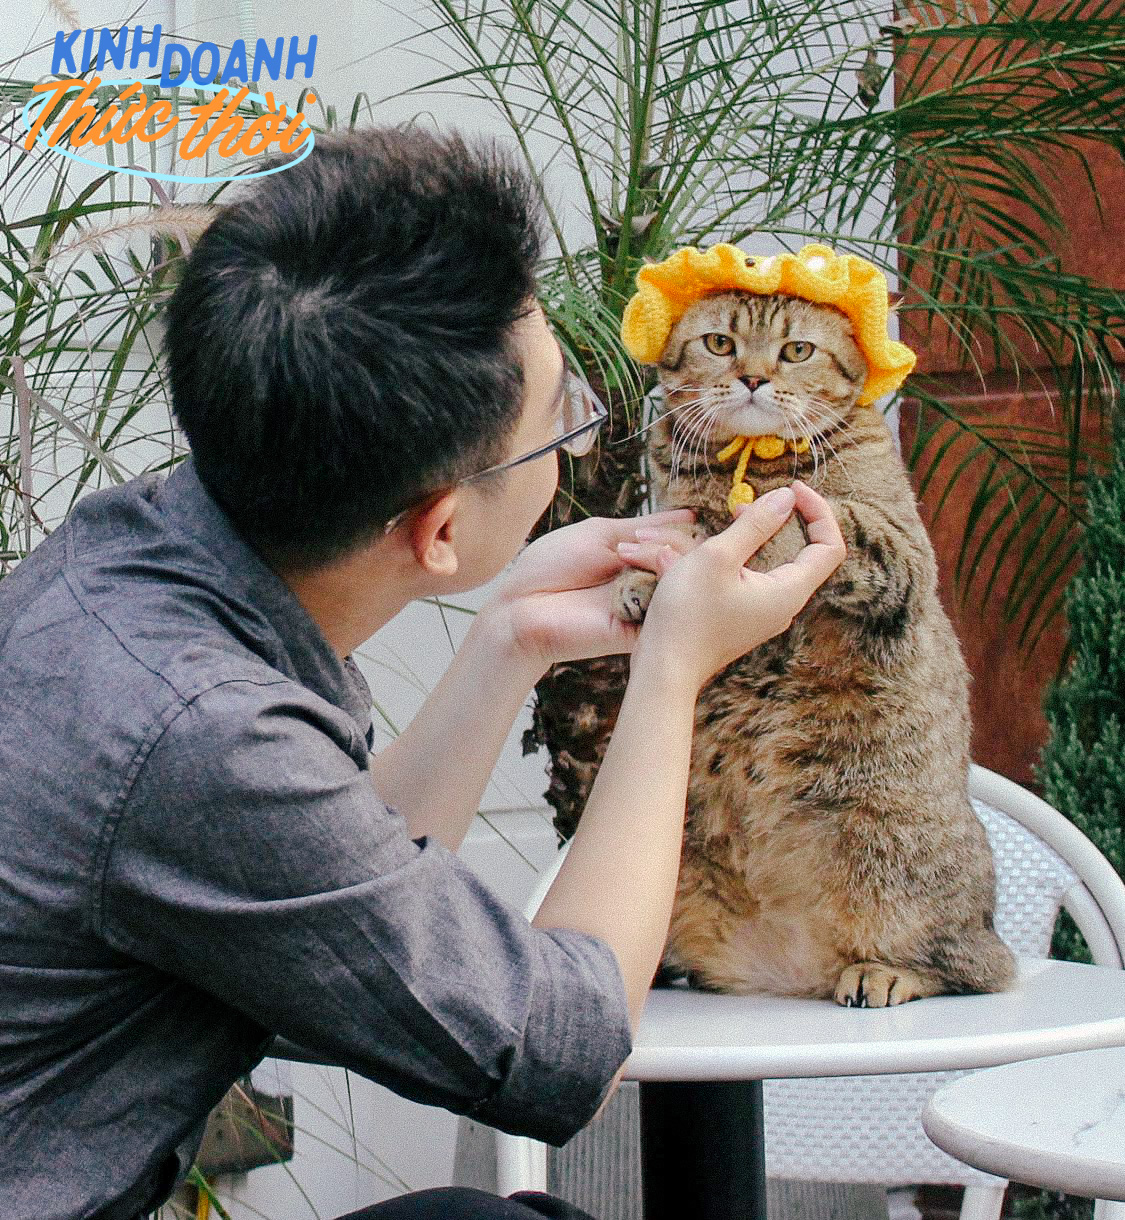 Những chú mèo Việt Nam thành “nghệ sĩ không chuyên”, mỗi ngày đi làm một phút mà giúp chủ kiếm bộn tiền - Ảnh 5.